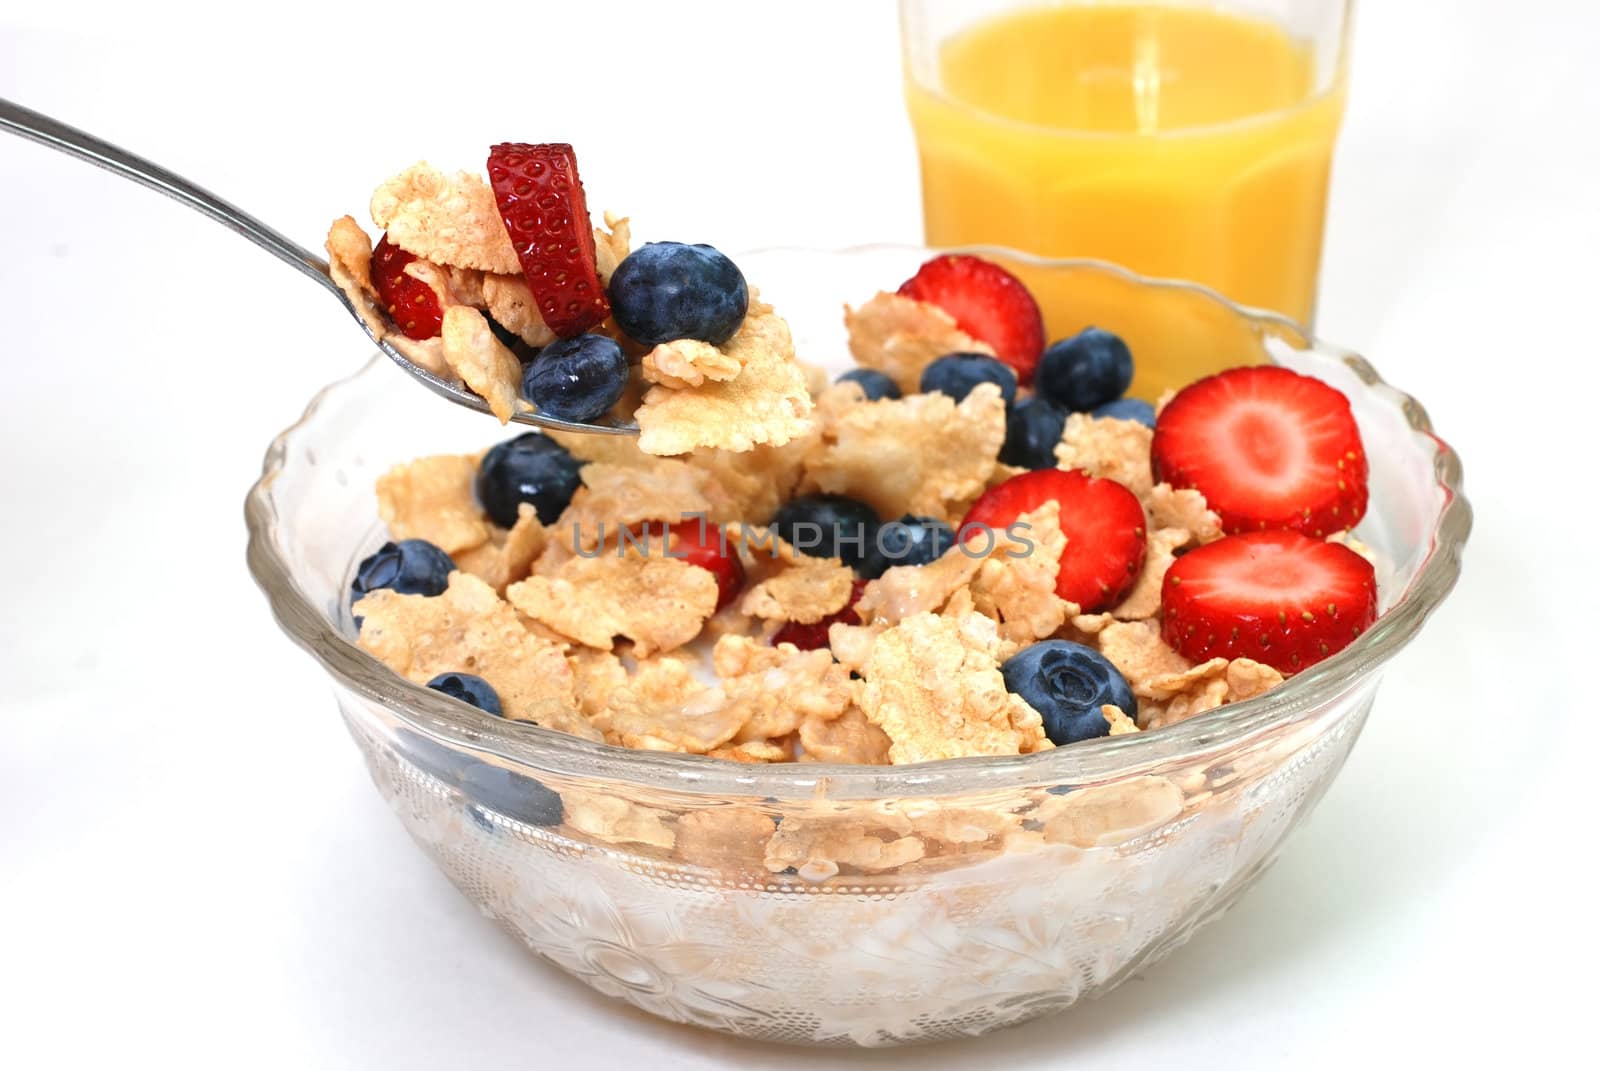 Breakfast Cereal by dehooks